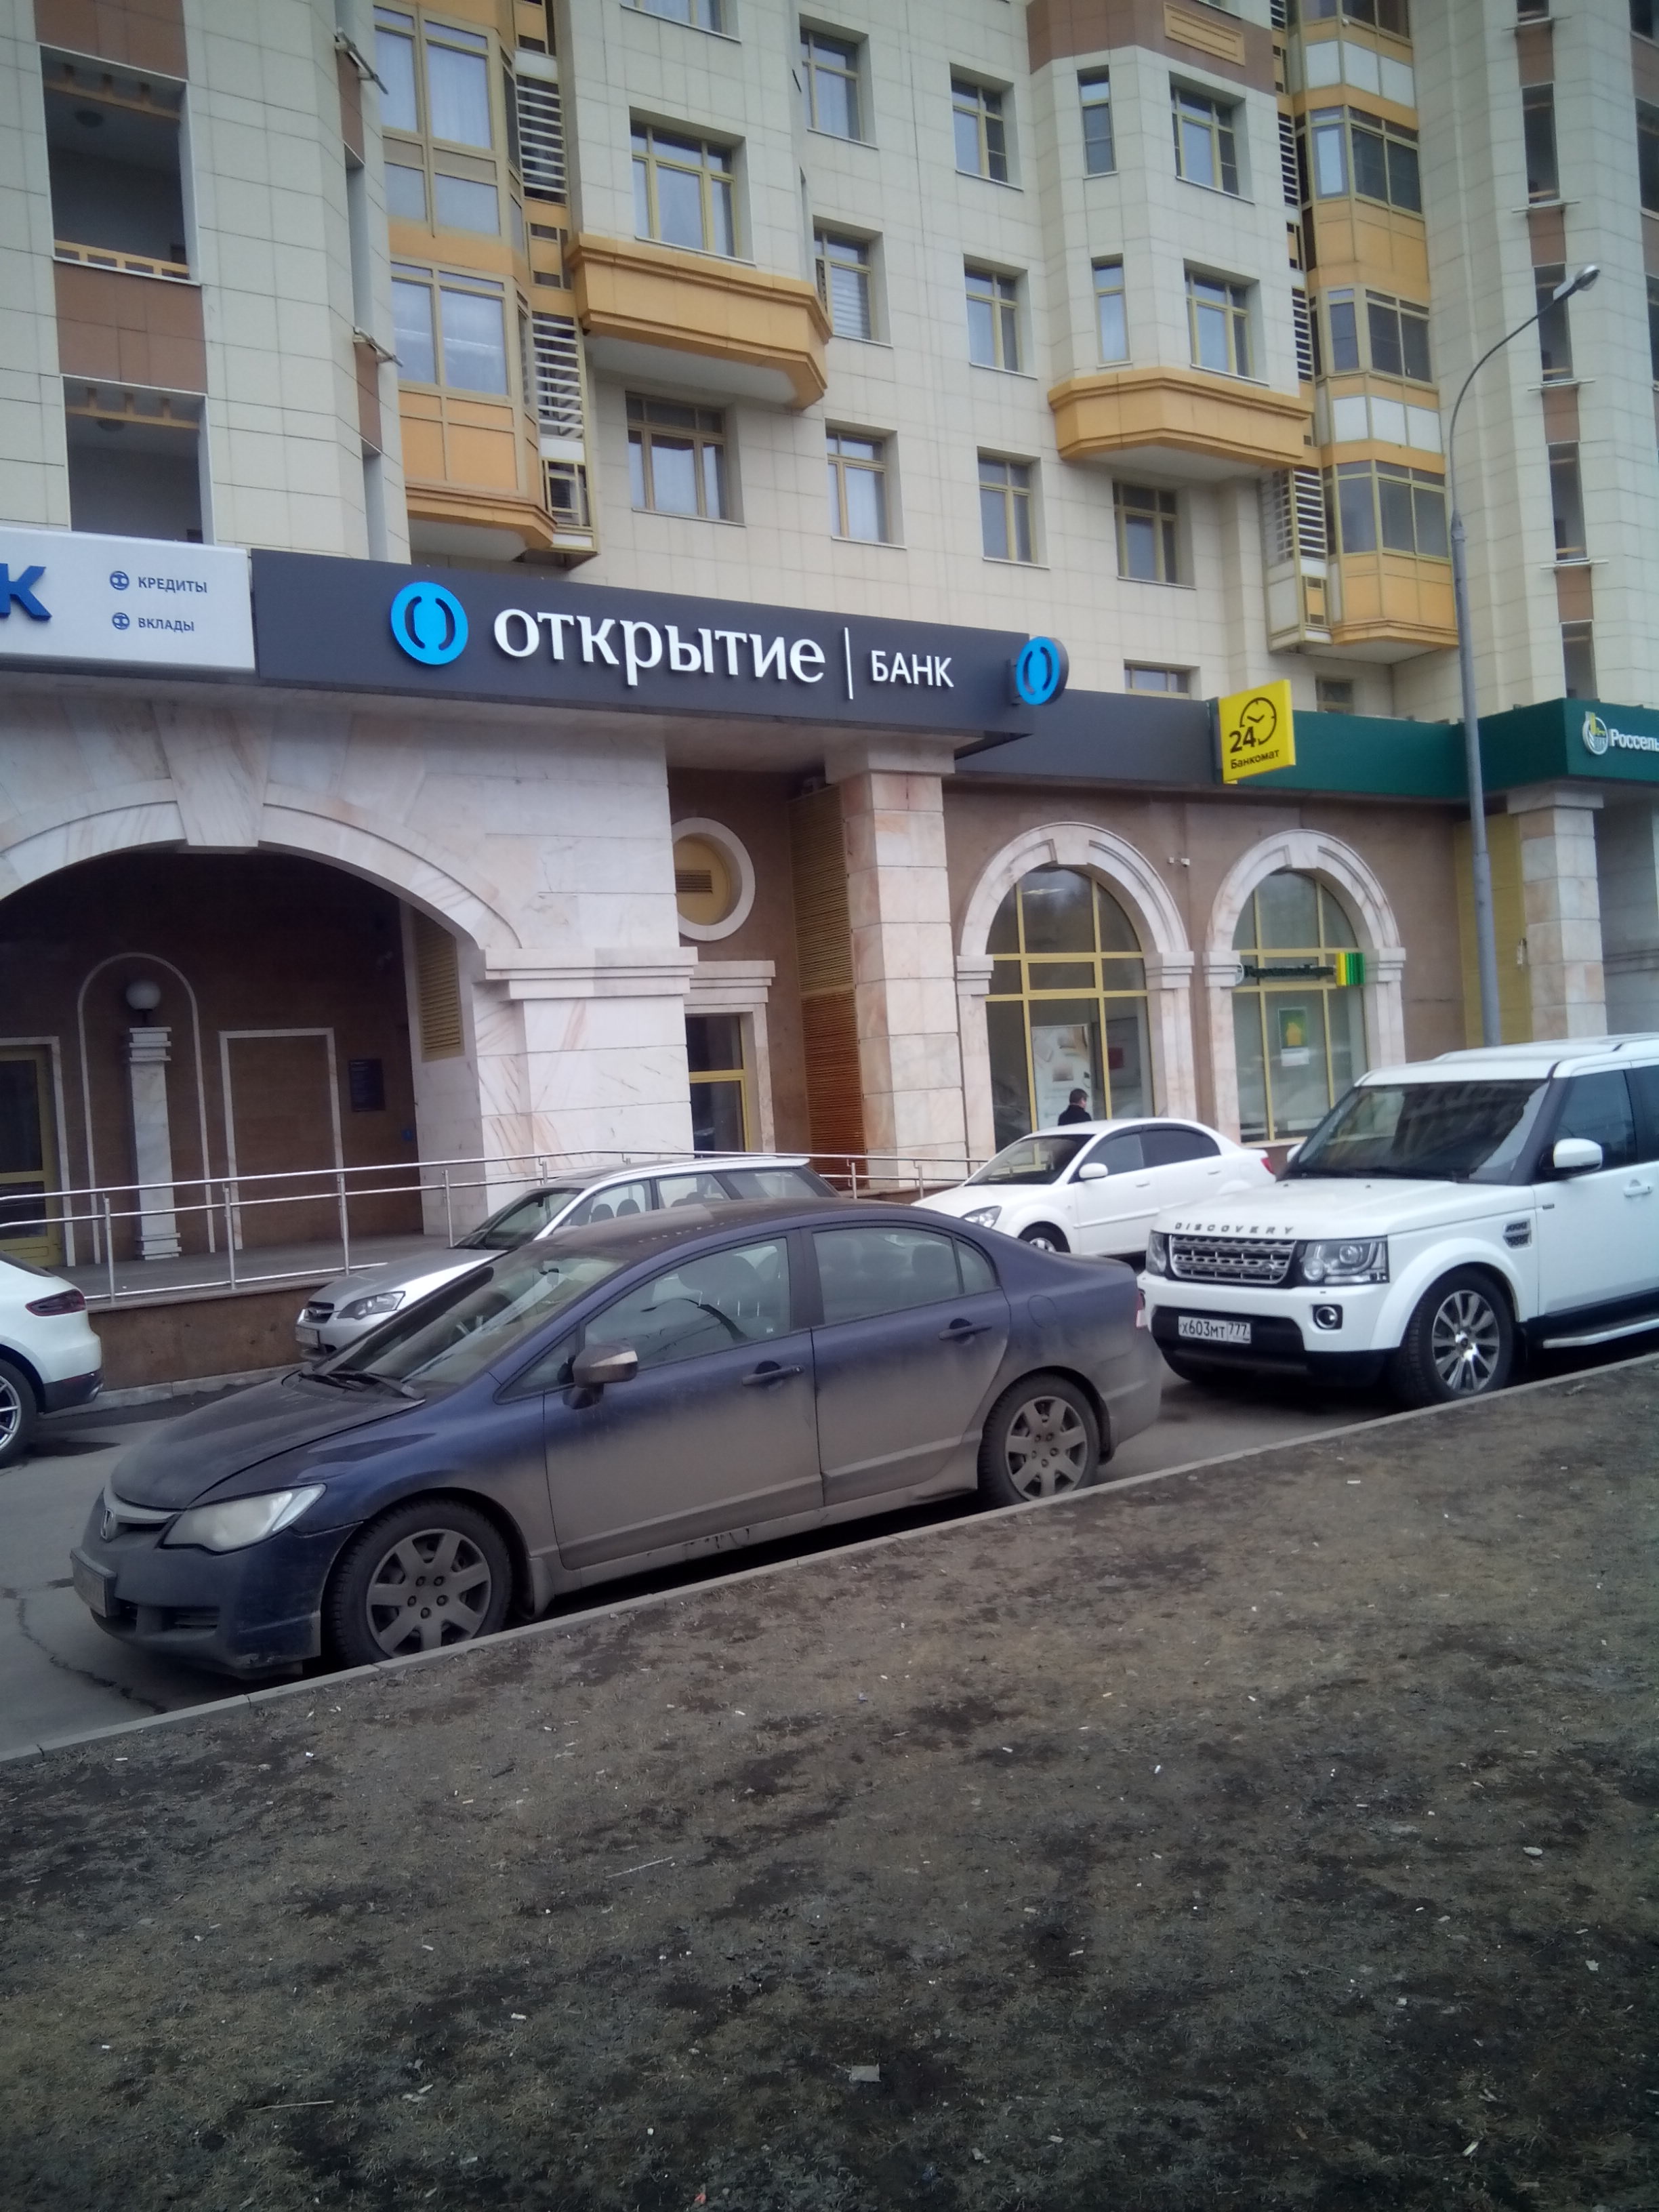 Банки открытие рядом со мной на карте. Банк открытие. Банк открытие рядом. Банк открытие Ордынка. Банк открытие Москва.